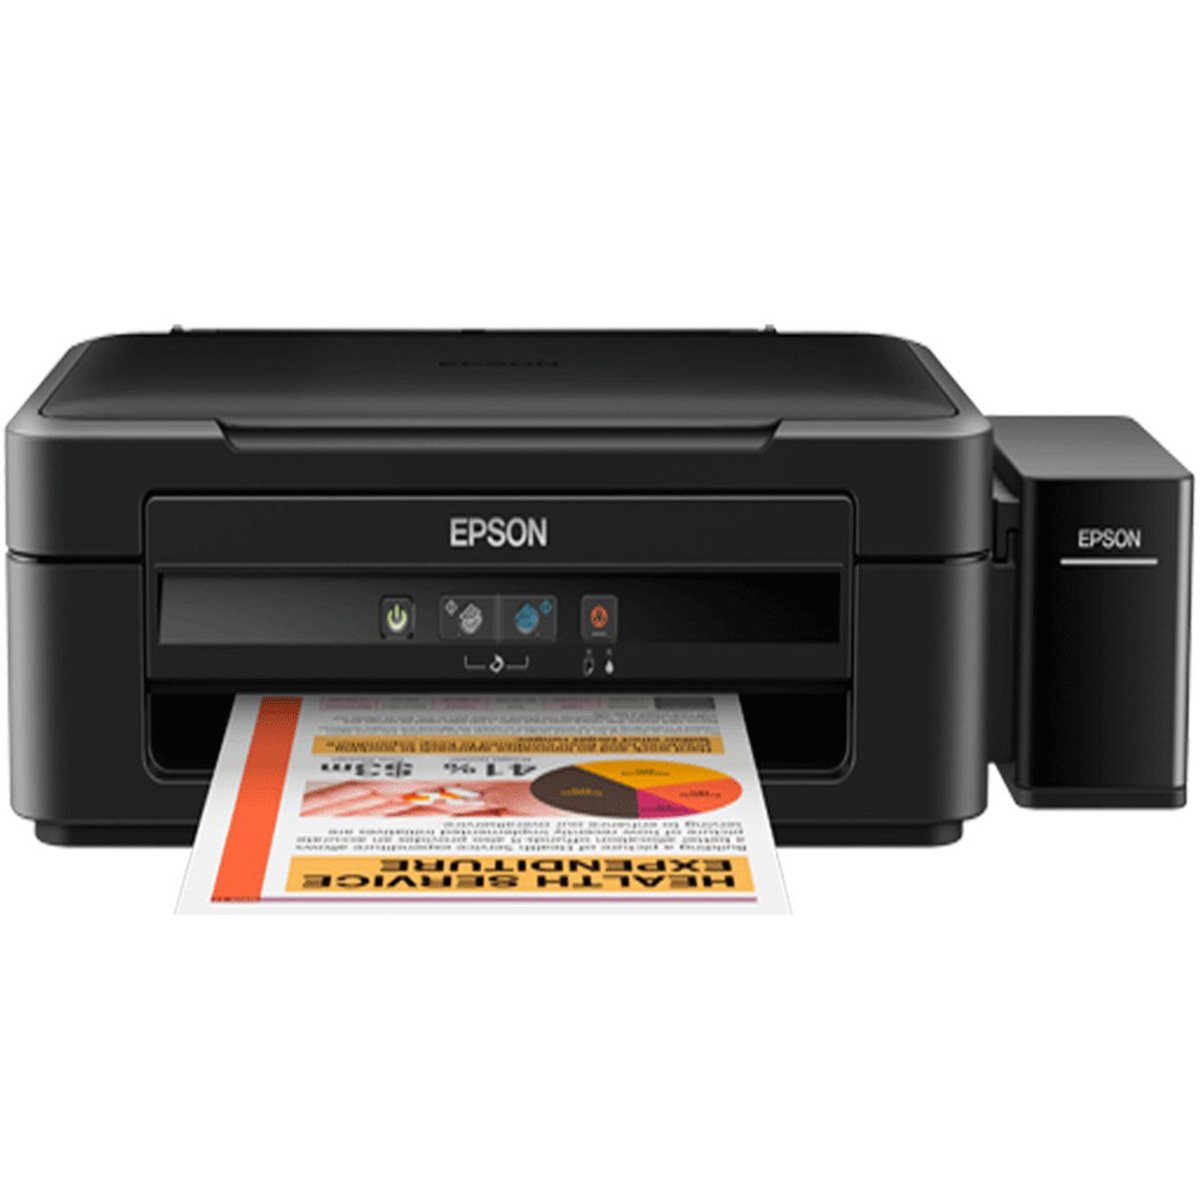 Epson Ink Jet Color Printer L220